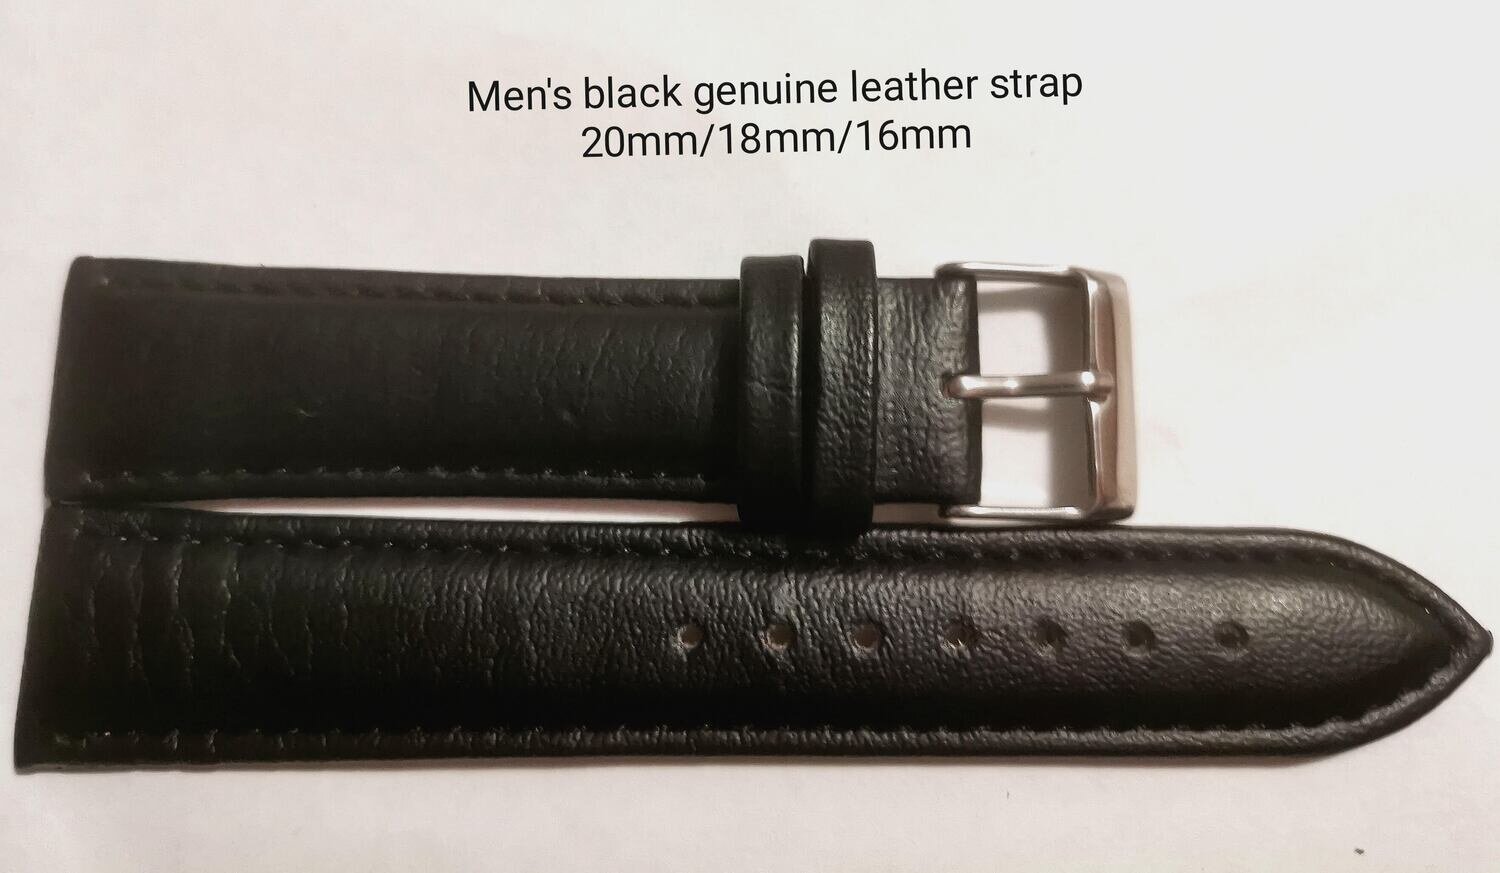 Men's black genuine leather strap 16mm/18mm/20mm